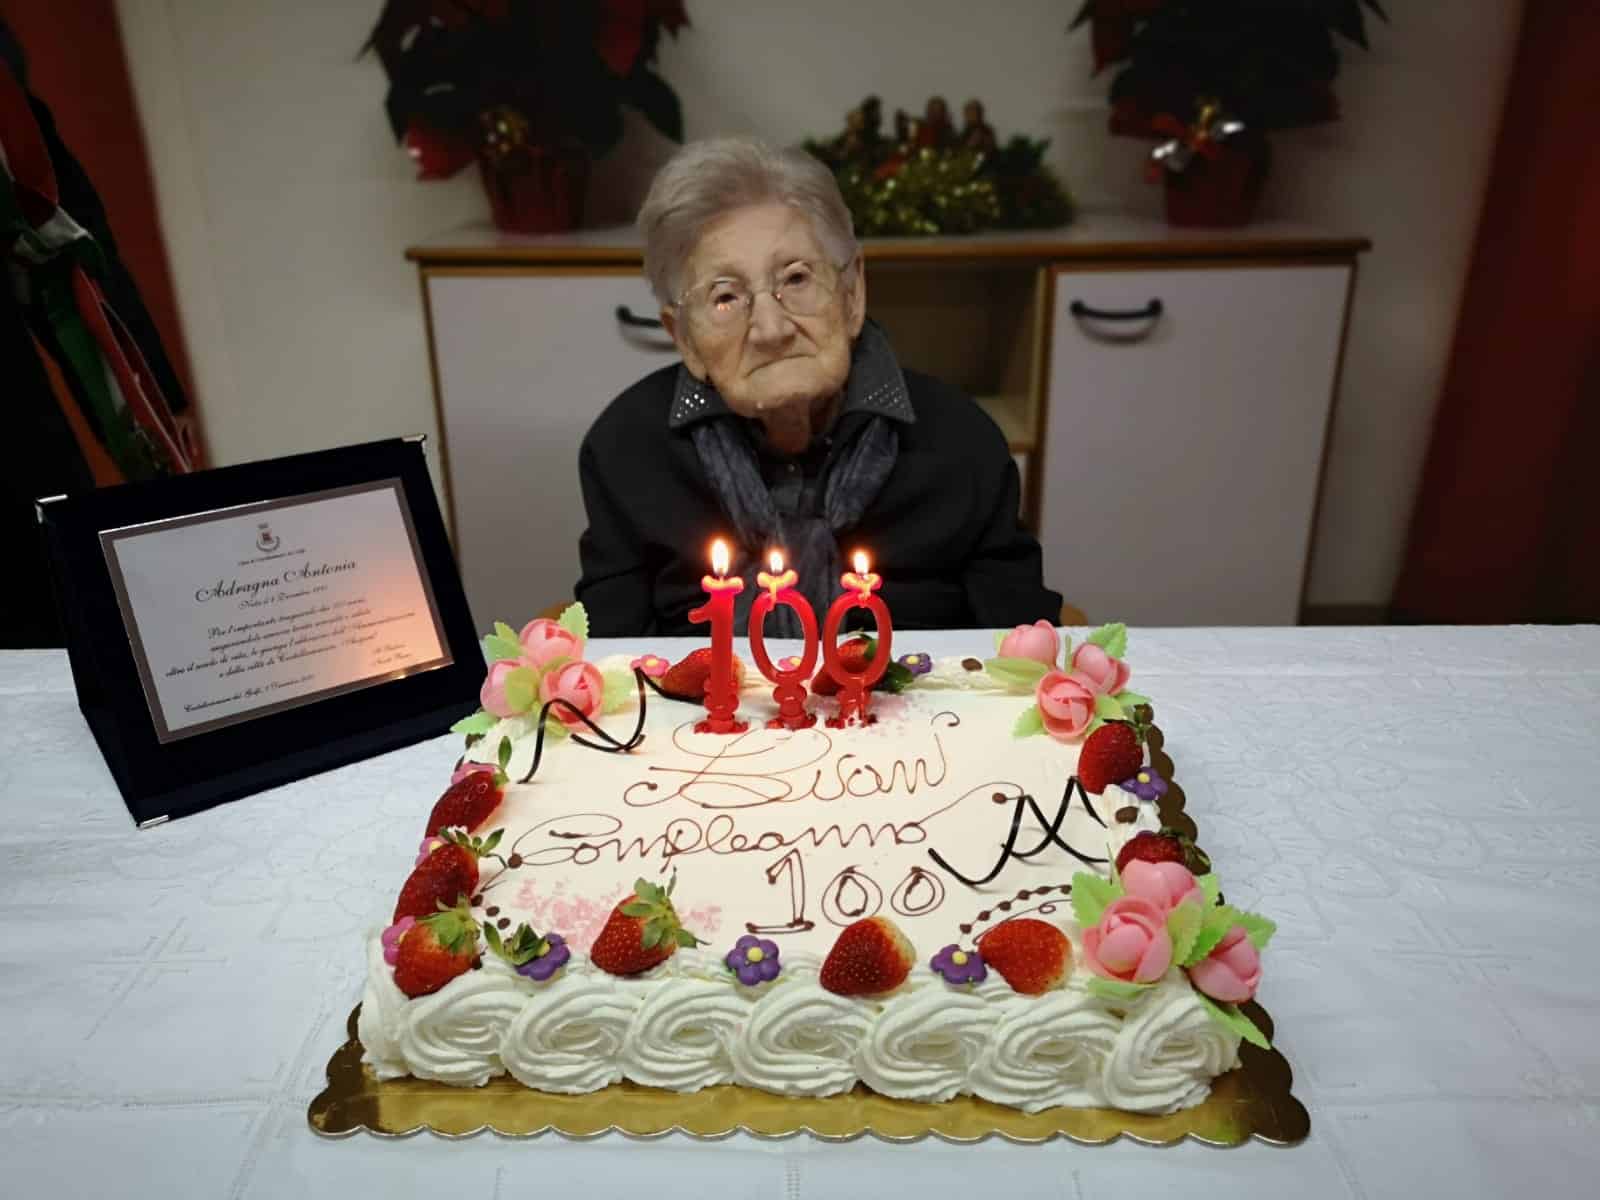 Antonietta Adragna, la nonnina centenaria omaggiata dall’Amministrazione comunale